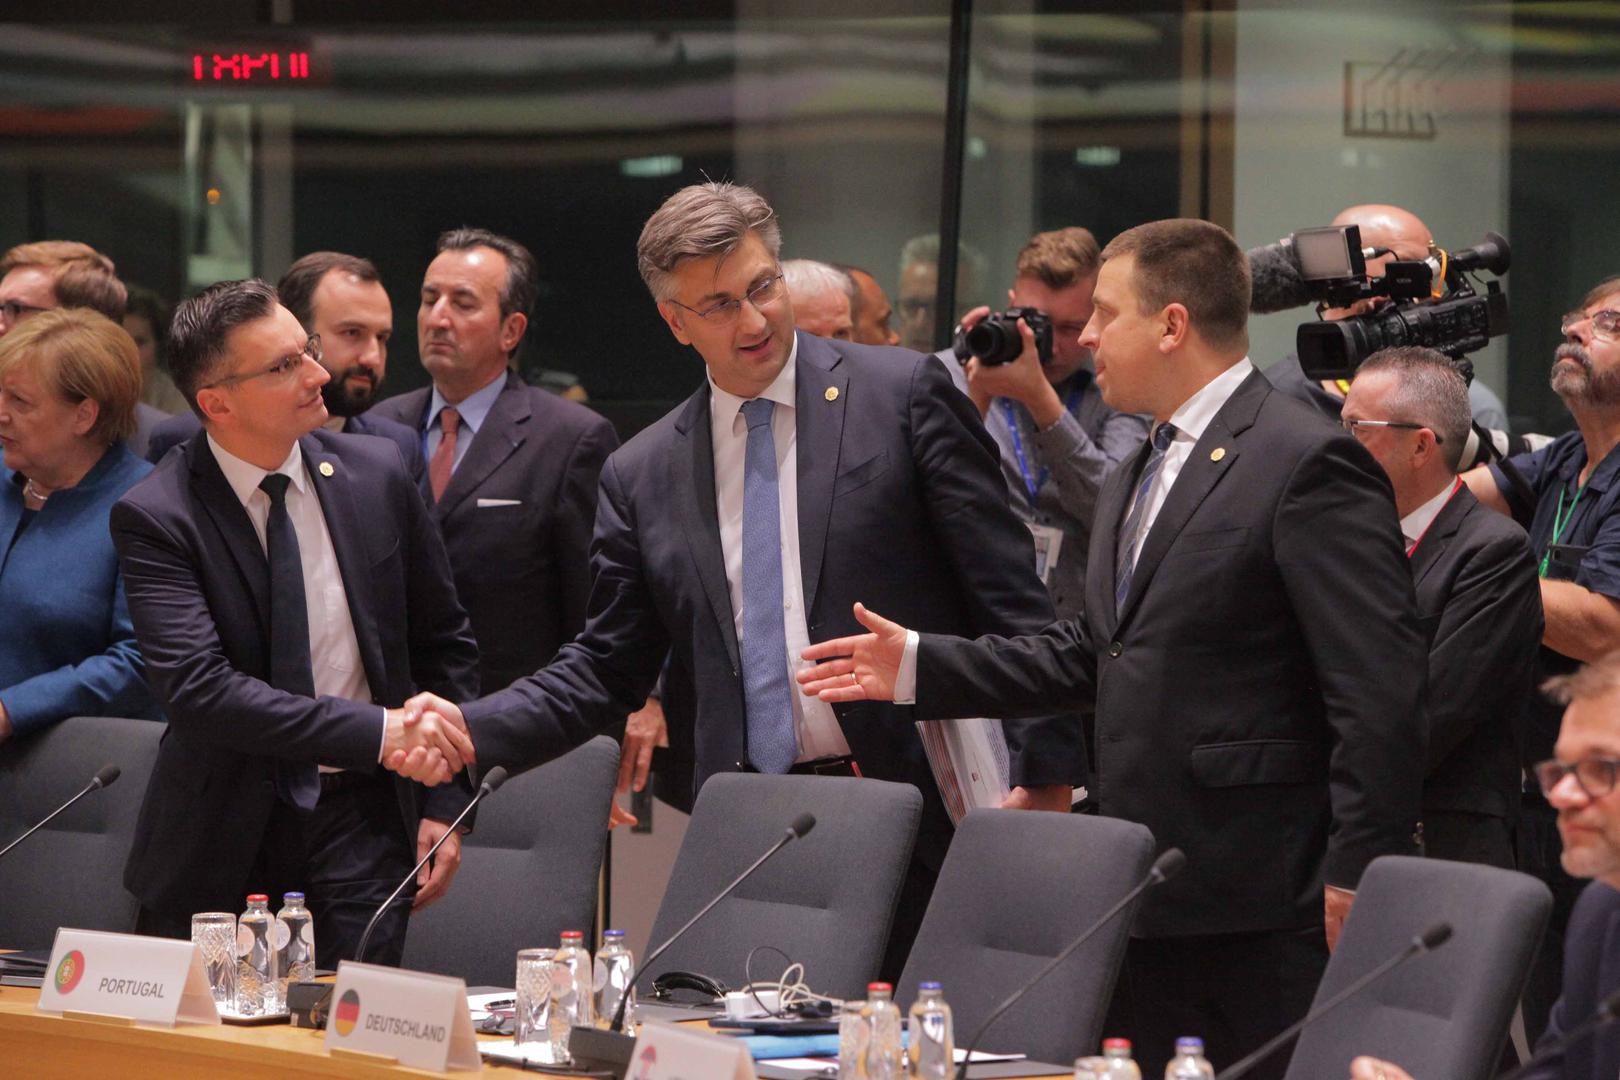 Premijer Andrej Plenković otputovao je u Bruxelles na sjednicu Europskog vijeća. Prije početka sjednice, srdačno se pozdravio s kolegama, čelnicima drugih država Europske unije